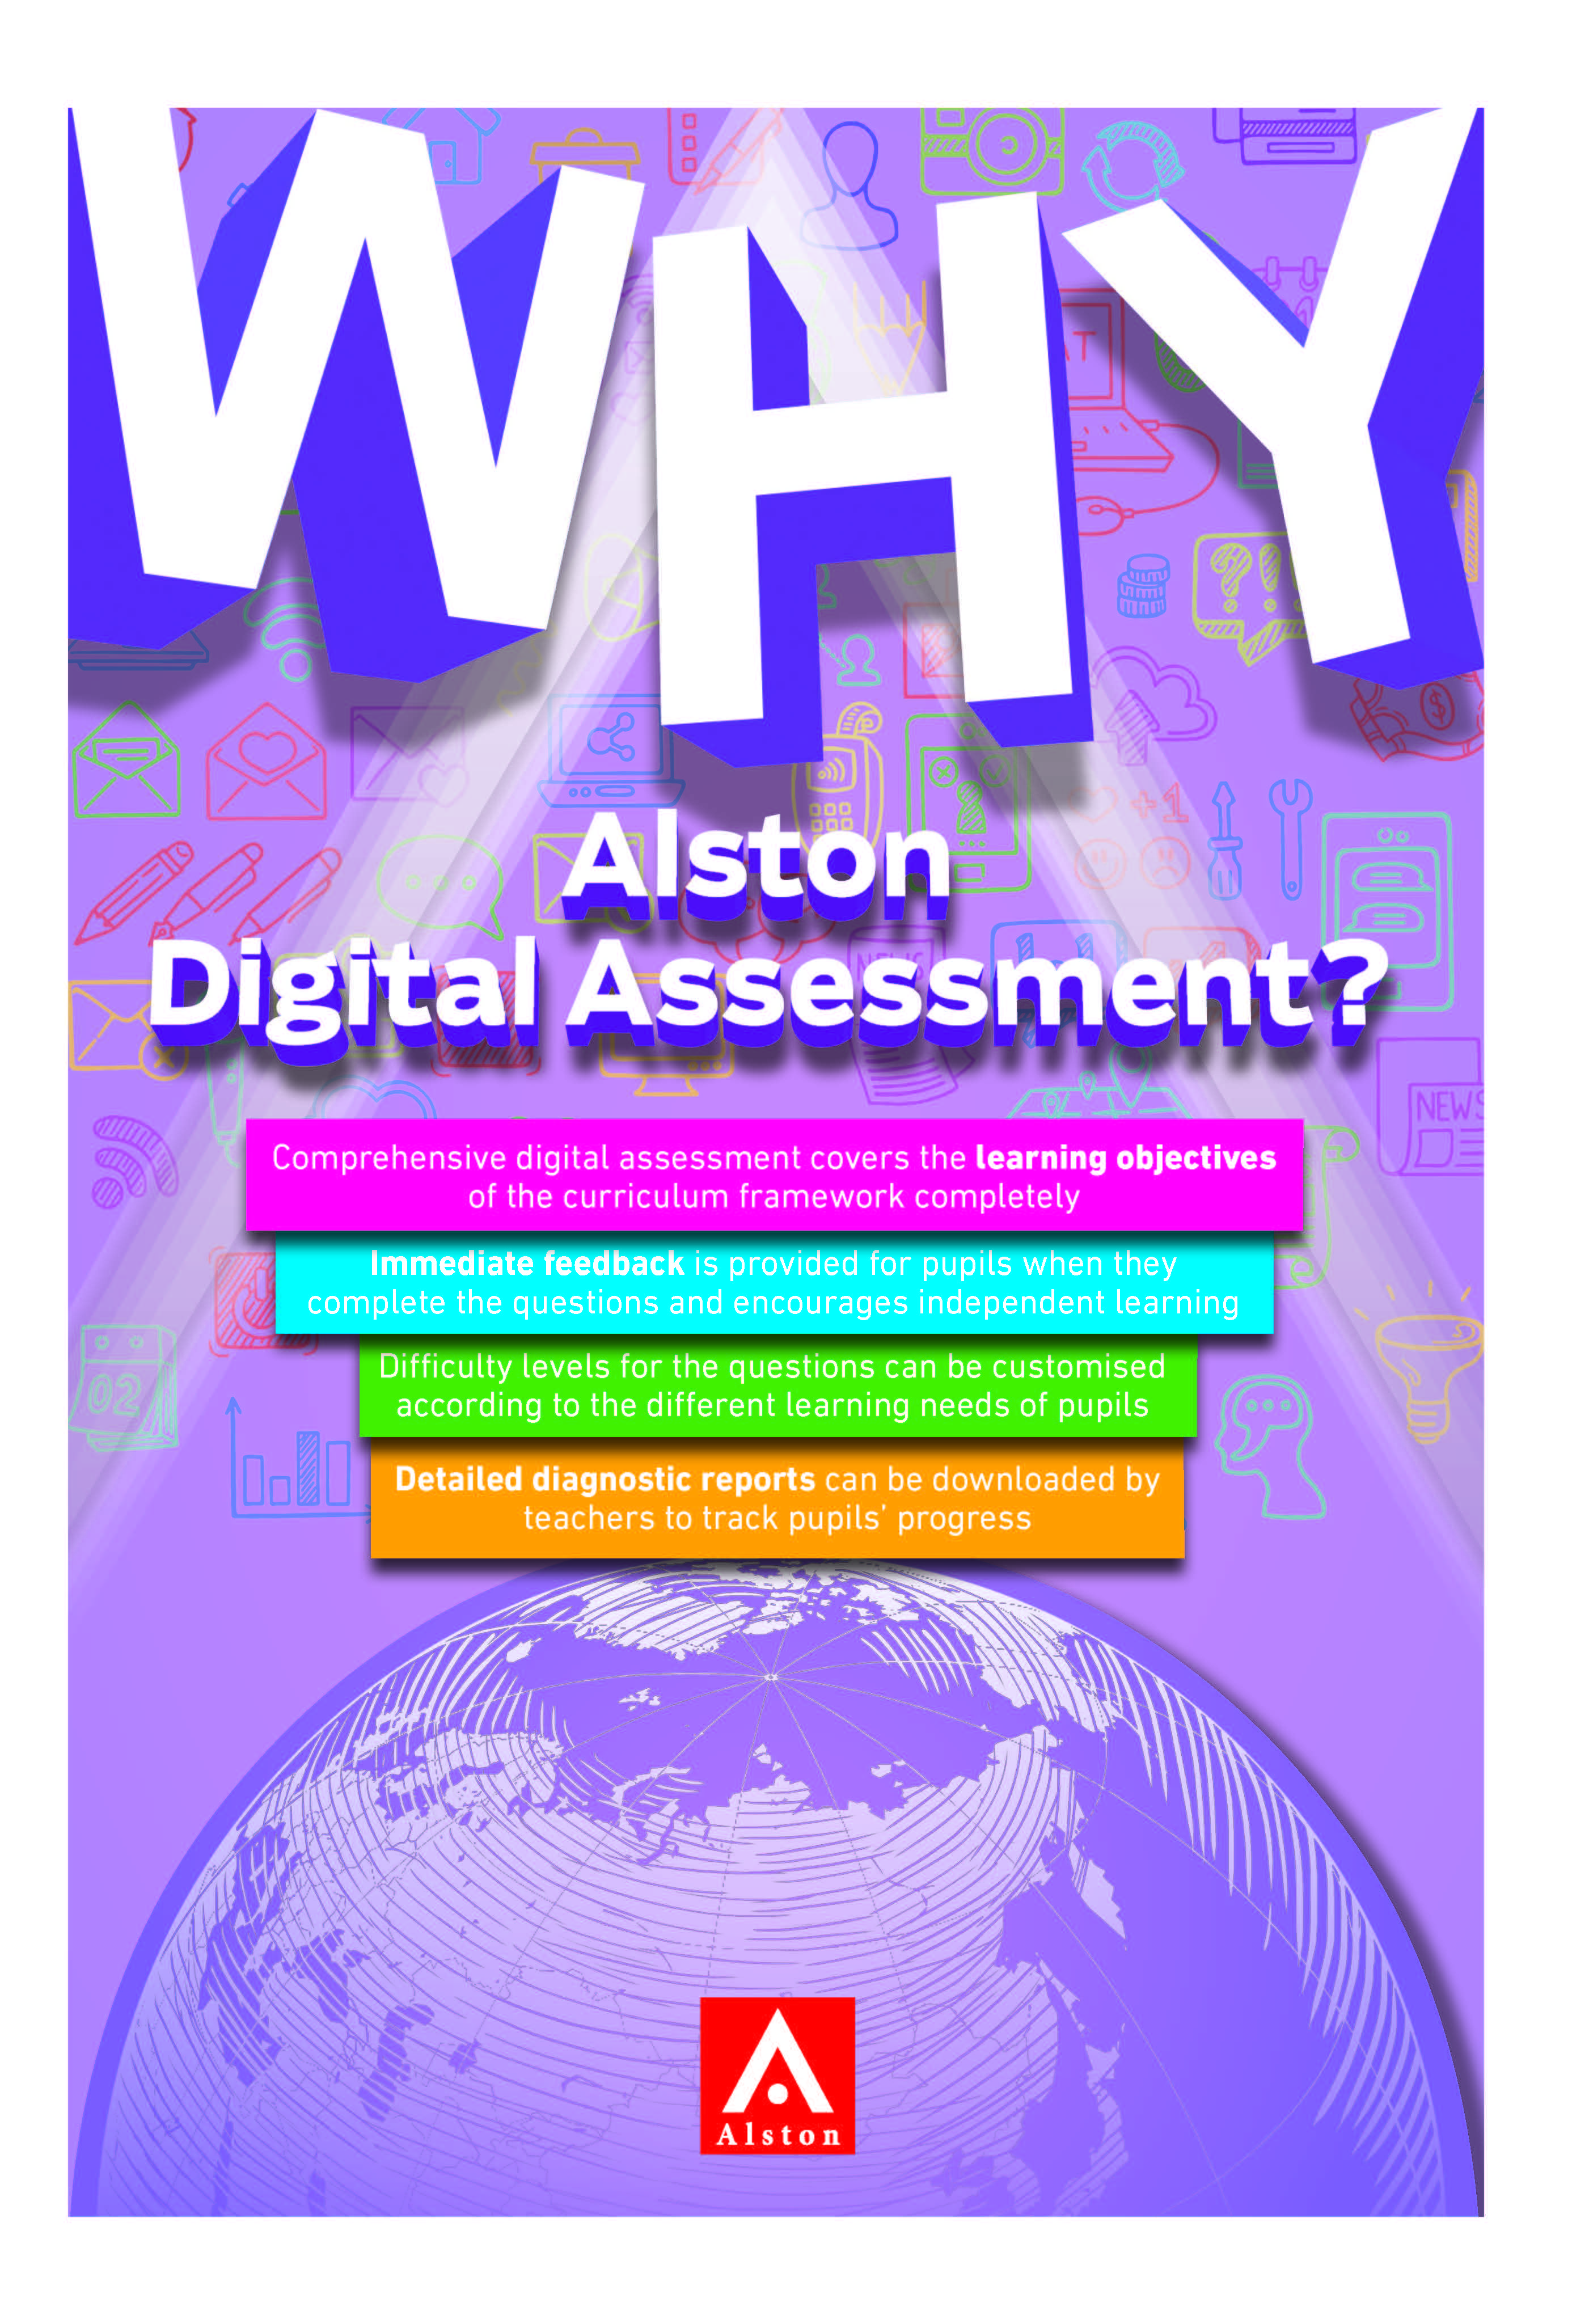 Alston 2019 Digital Assessment Flyer Cover